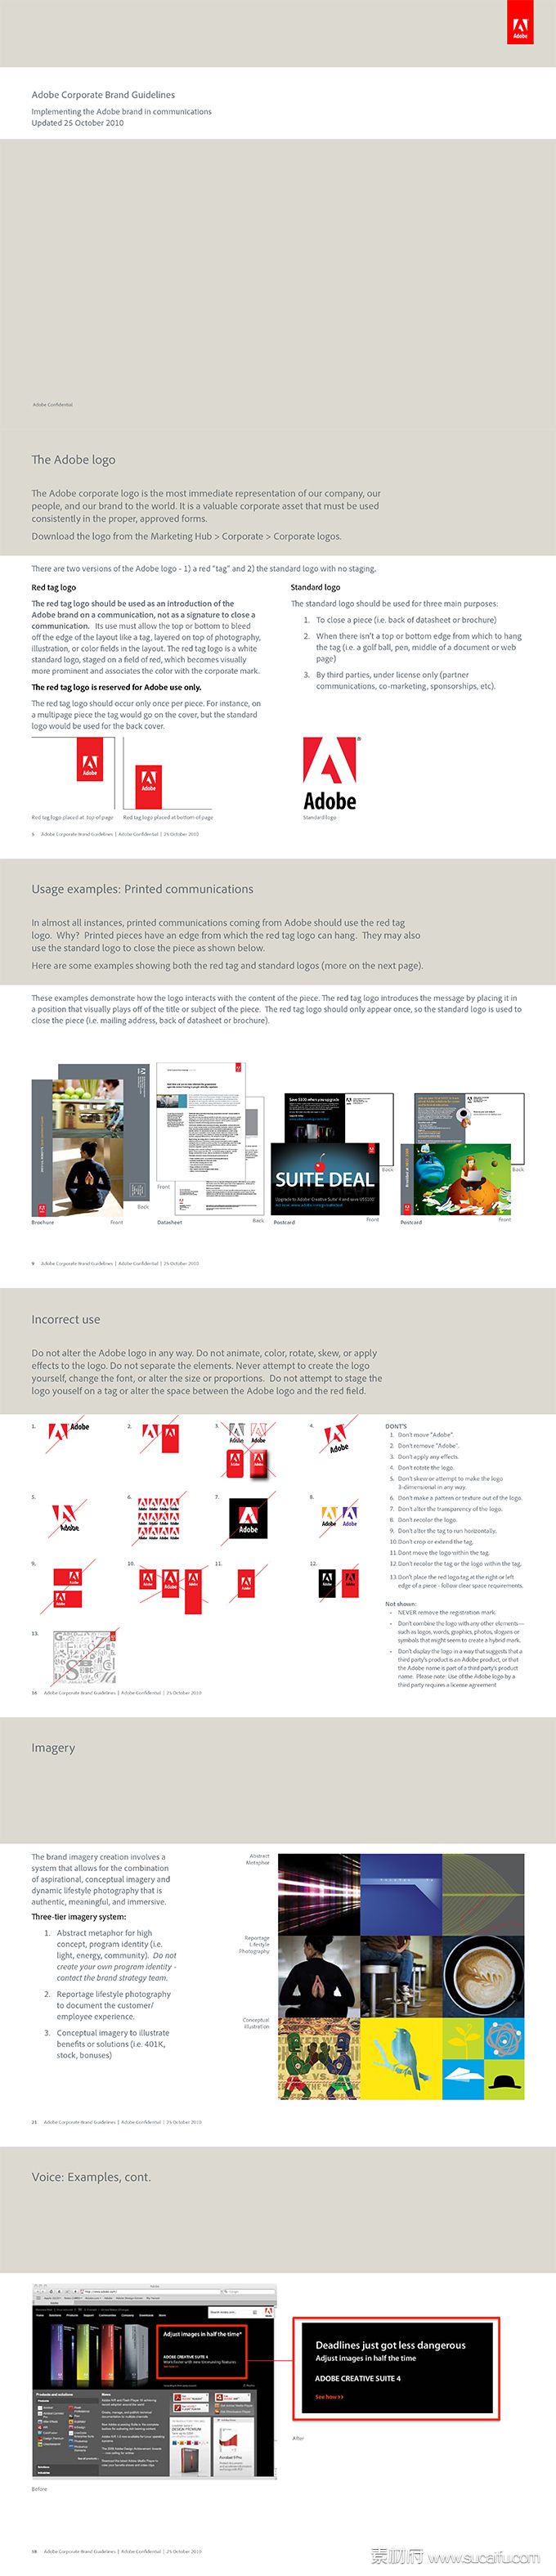 Adobe公司品牌VI手册